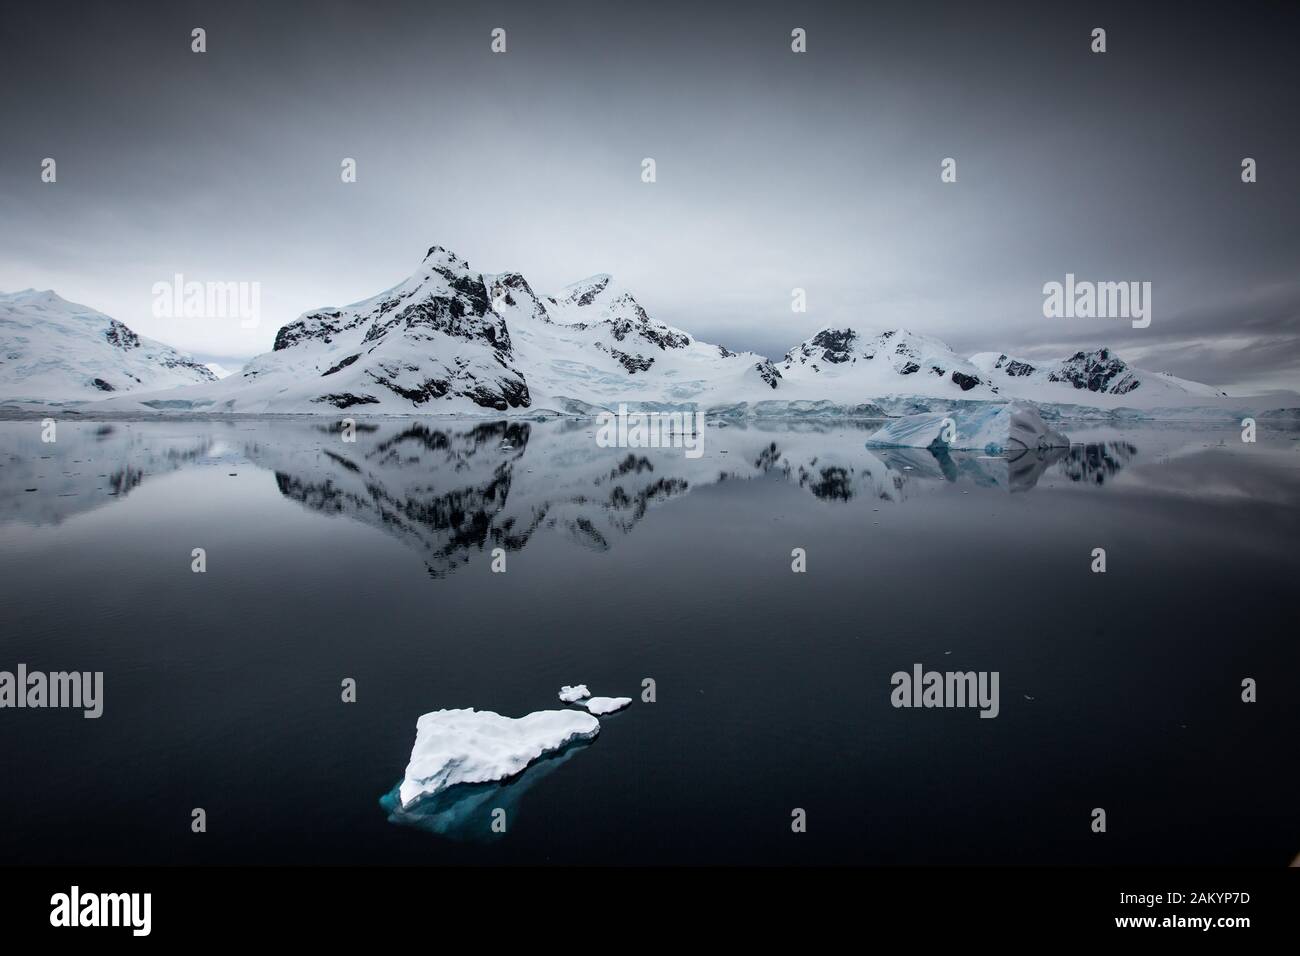 Glaciar hielo, hielo de ladrillo, icebergs frente a las montañas y glaciares de la bahía del Paraíso con reflejos oceánicos sobreatmosféricos, Antártida Foto de stock